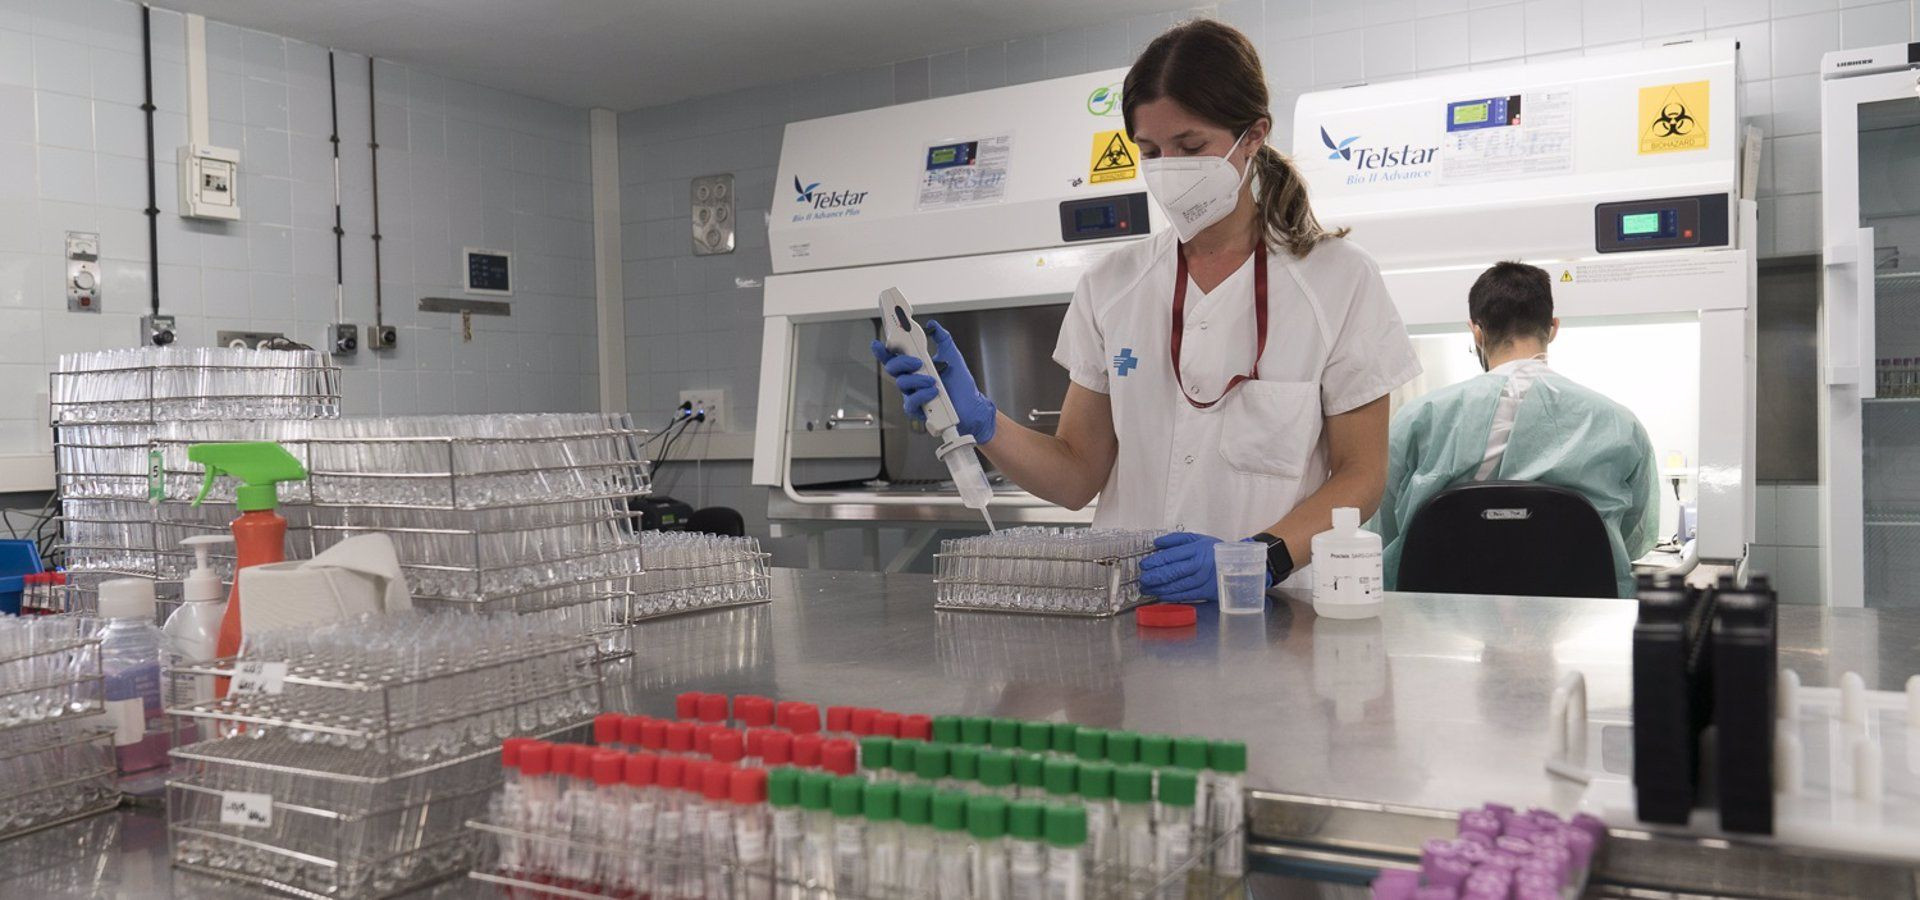 Laboratorio de análisis de PCR en el Hospital Universitari de Bellvitge (HUB), en L'Hospitalet de Llobregat (Barcelona), en una imagen de septiembre del 2020. - HOSPITAL UNIVERSITARI DE BELLVITGE - Archivo